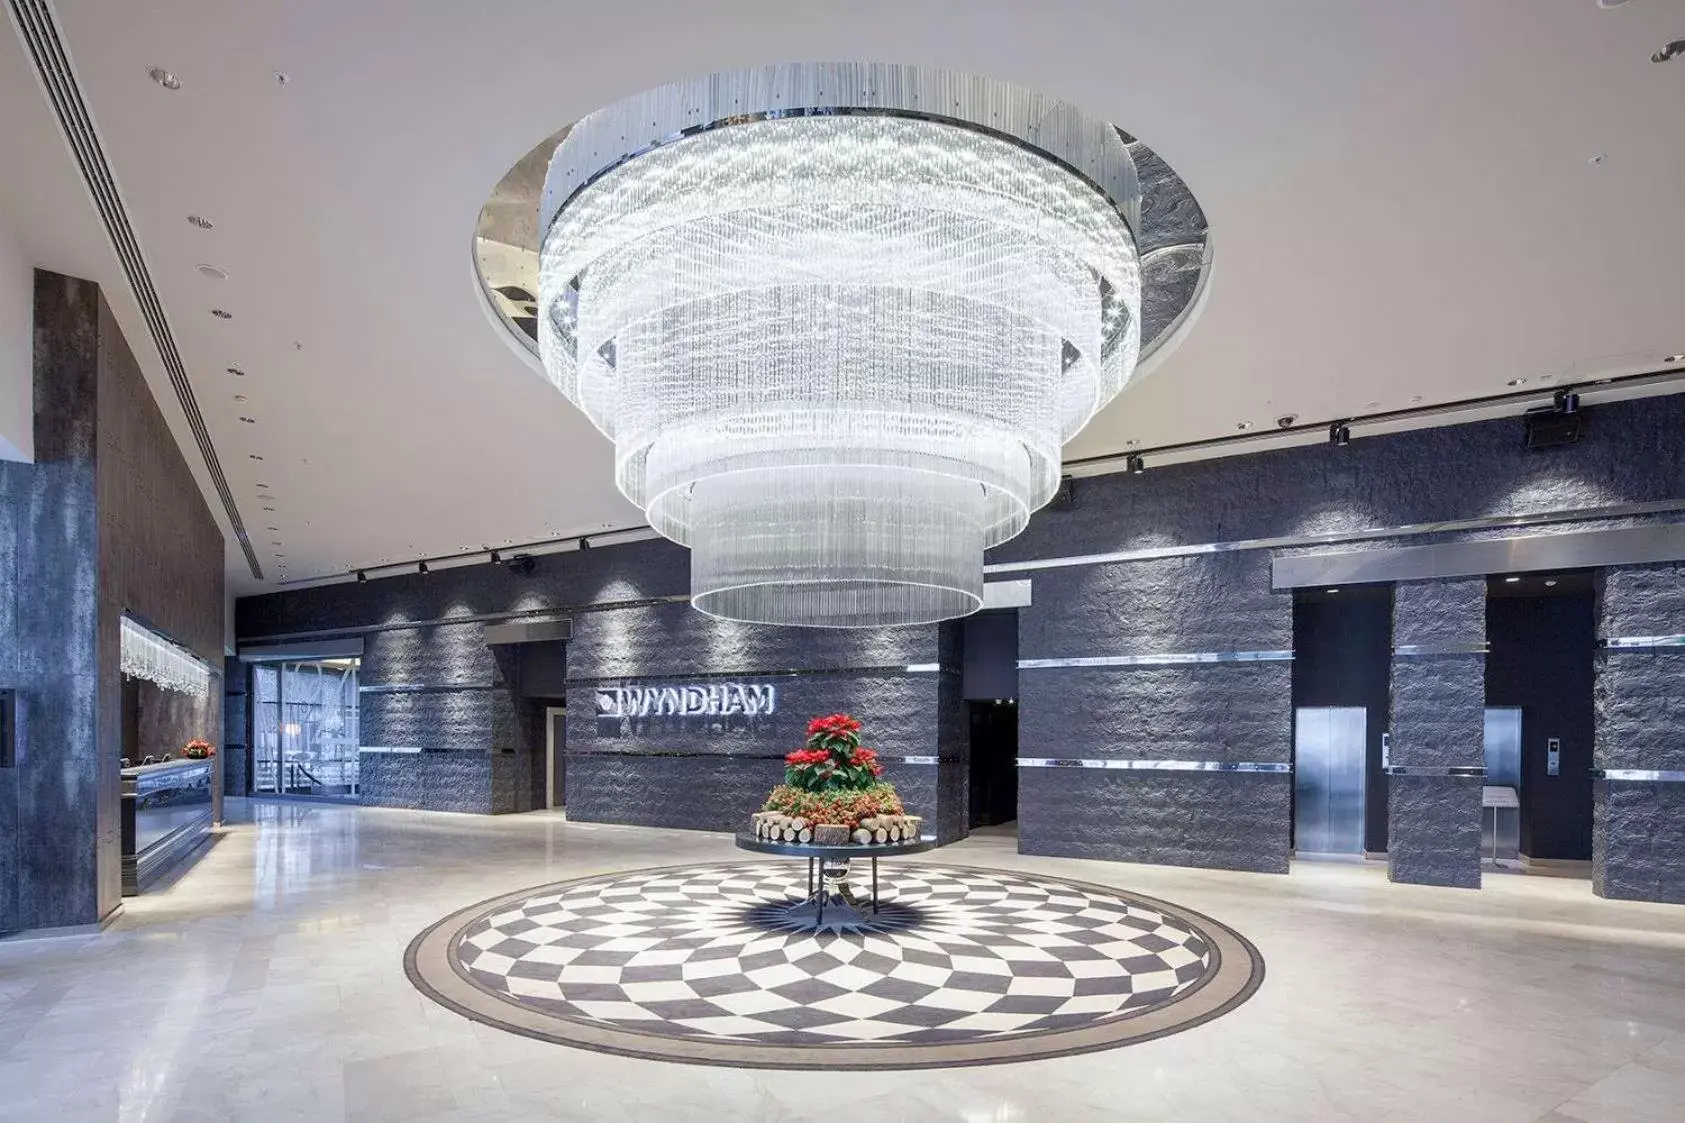 Lobby or reception in Wyndham Ankara